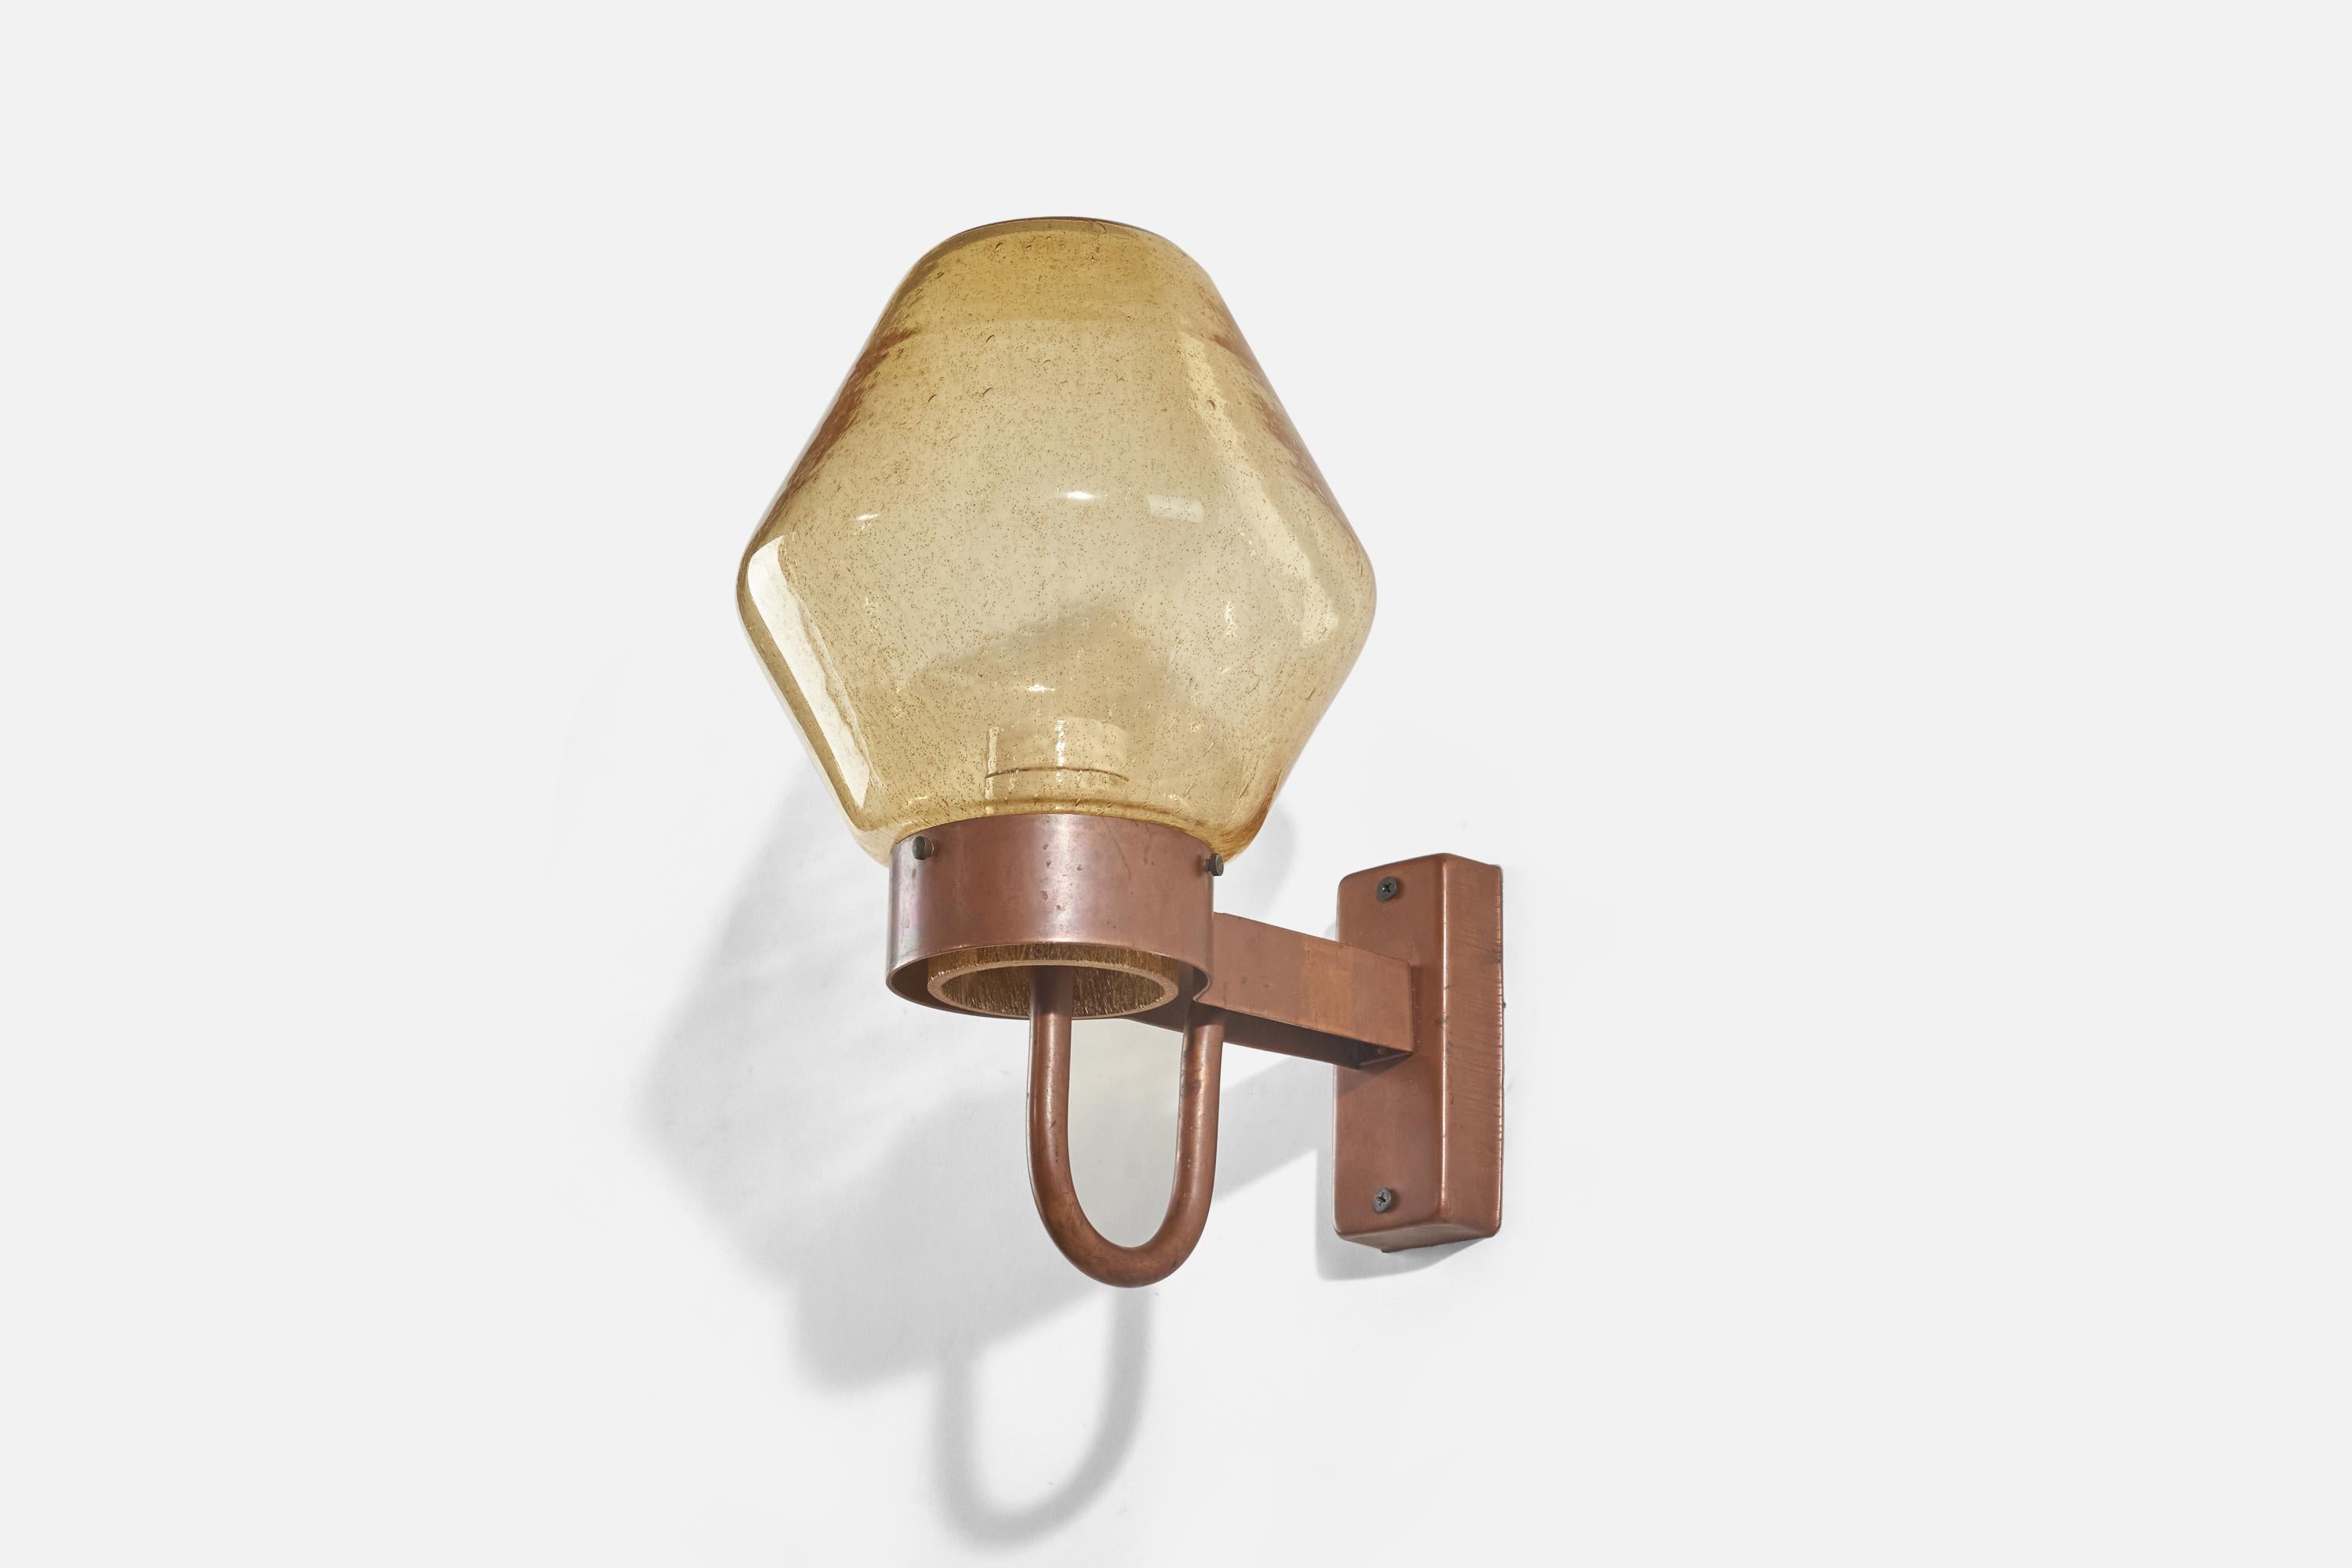 Une applique/applique en cuivre et verre jaune conçue et produite par Hans-Agne Jakobsson, Suède. c. 1960s.

La douille accepte les ampoules standard E-26 à culot moyen.

Dimensions de la plaque arrière (pouces) : 5 x 2,06 x 1,12 (hauteur x